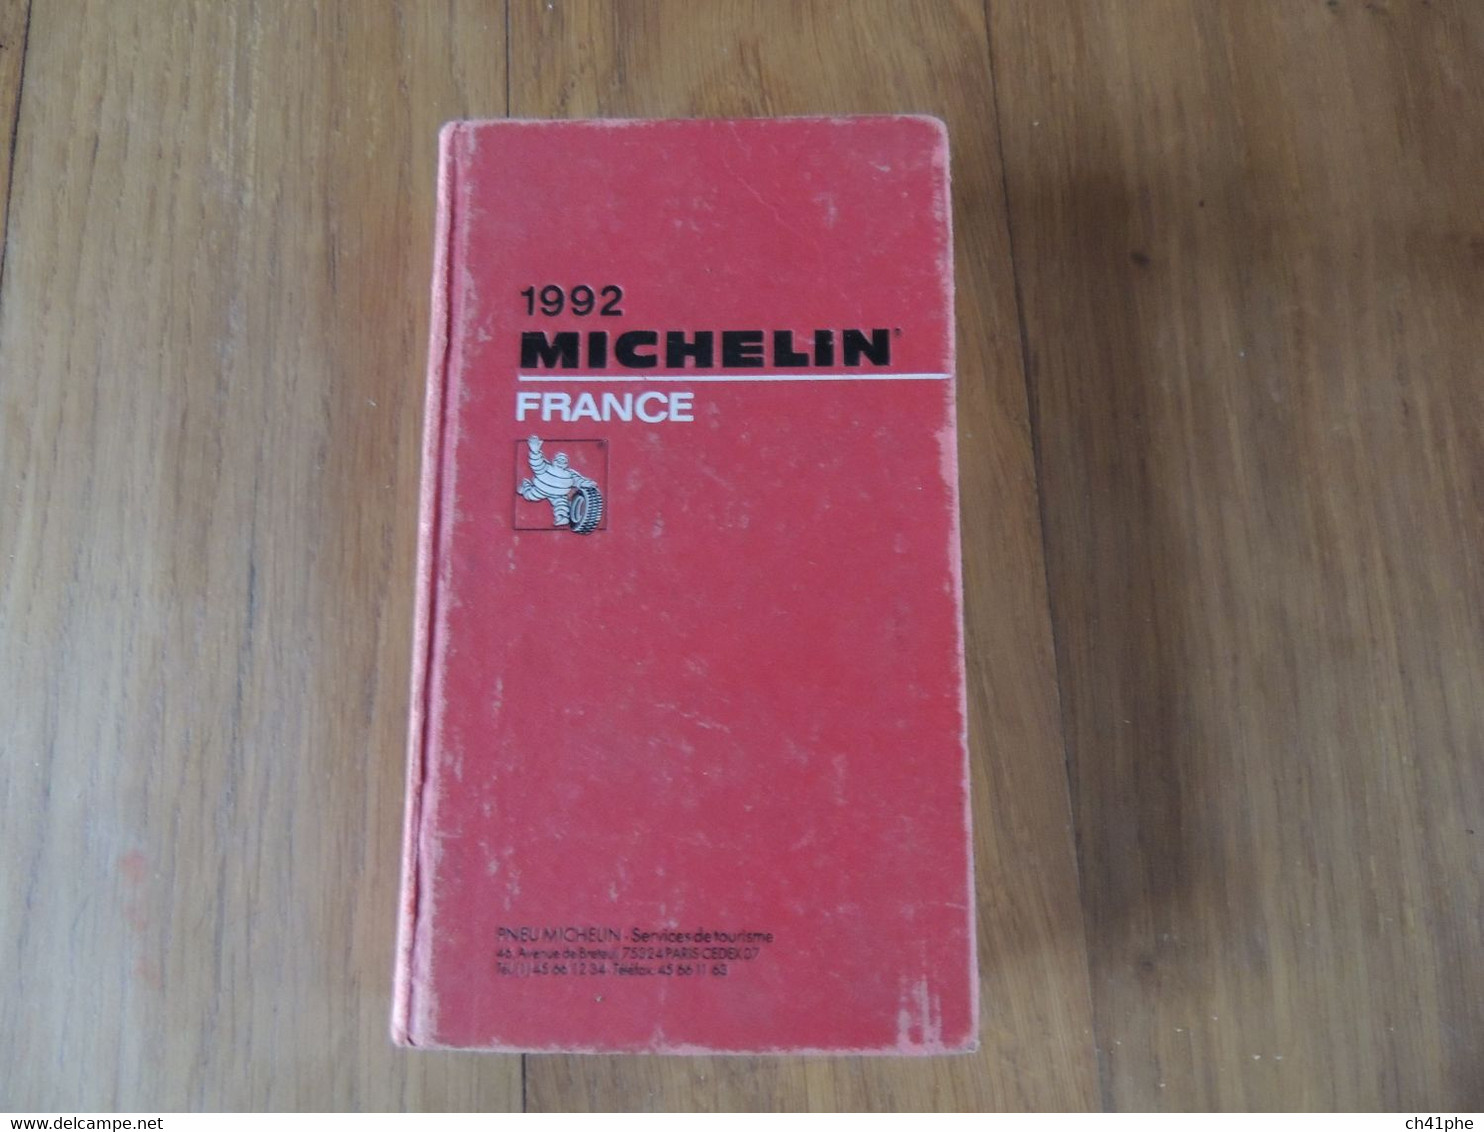 3 GUIDES MICHELIN DE 1977 - 1992 - 1998 - GUIDE MICHELIN - VOIR DETAIL - Michelin (guides)